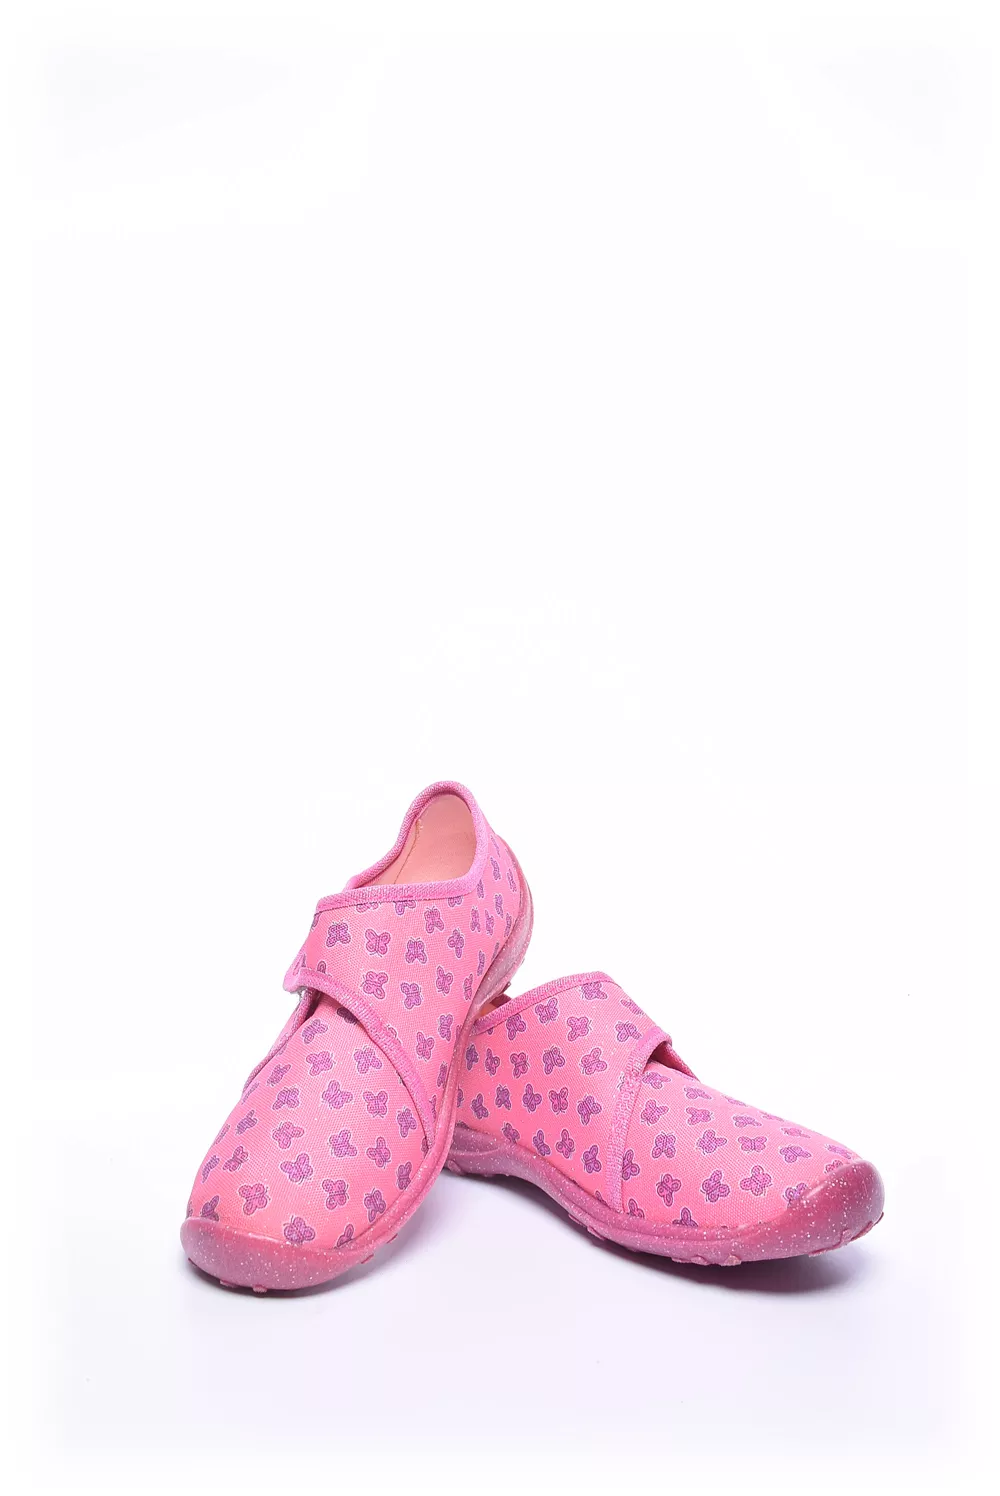 Pantofi fete [3]